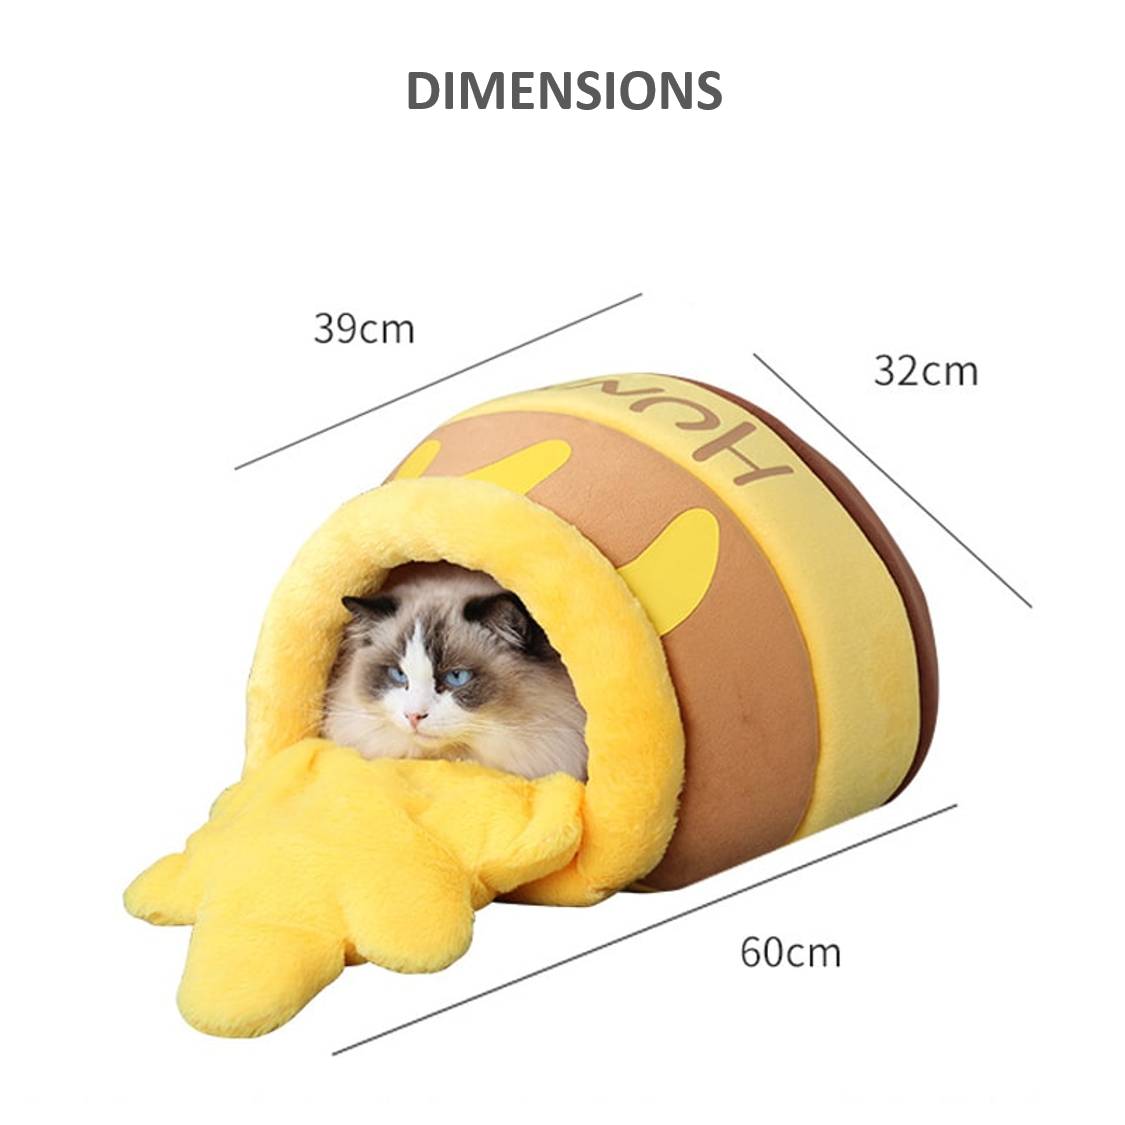 Dimensions du lit en forme de pot de miel pour chat